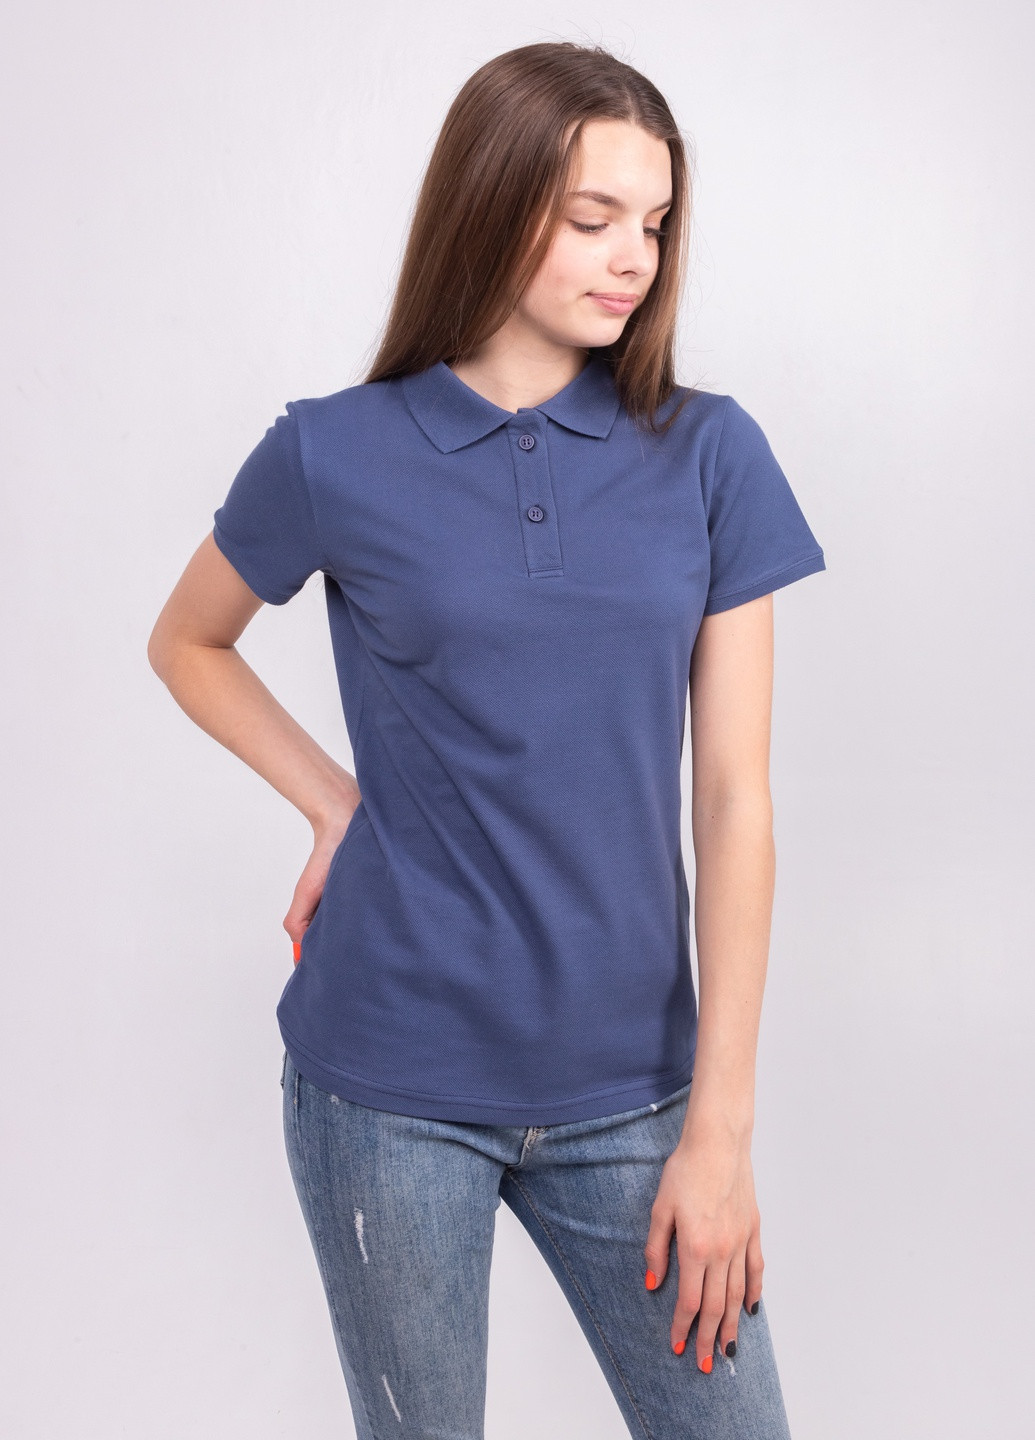 Синяя женская футболка-футболка поло жіноча TvoePolo однотонная